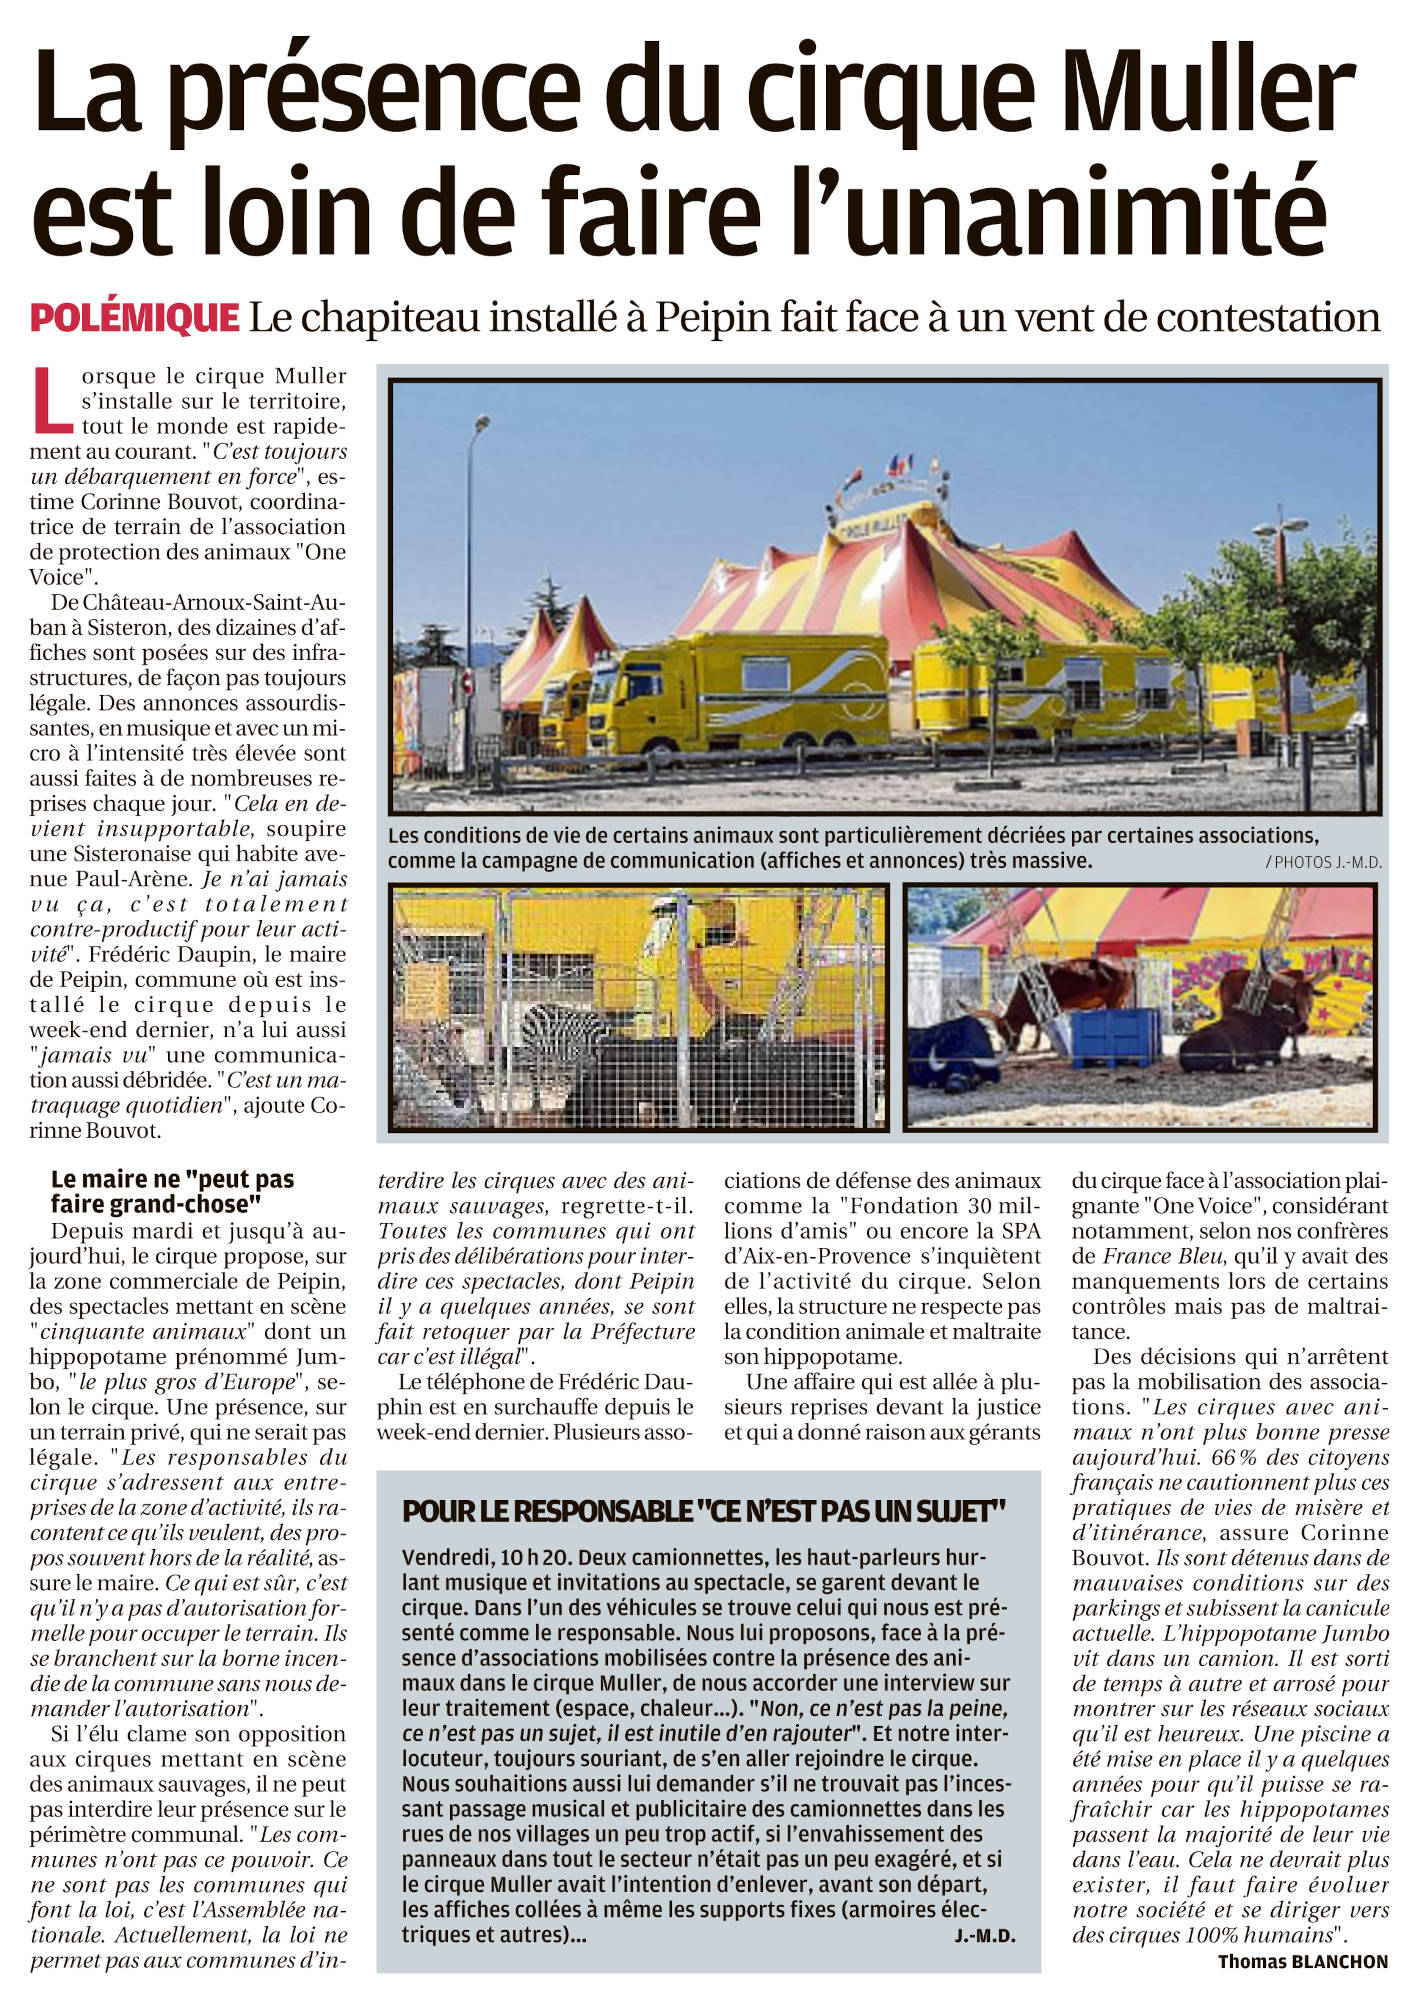 La Provence du 24 juillet 2022 : la présence du cirque Muller est loin de faire l'unanimité